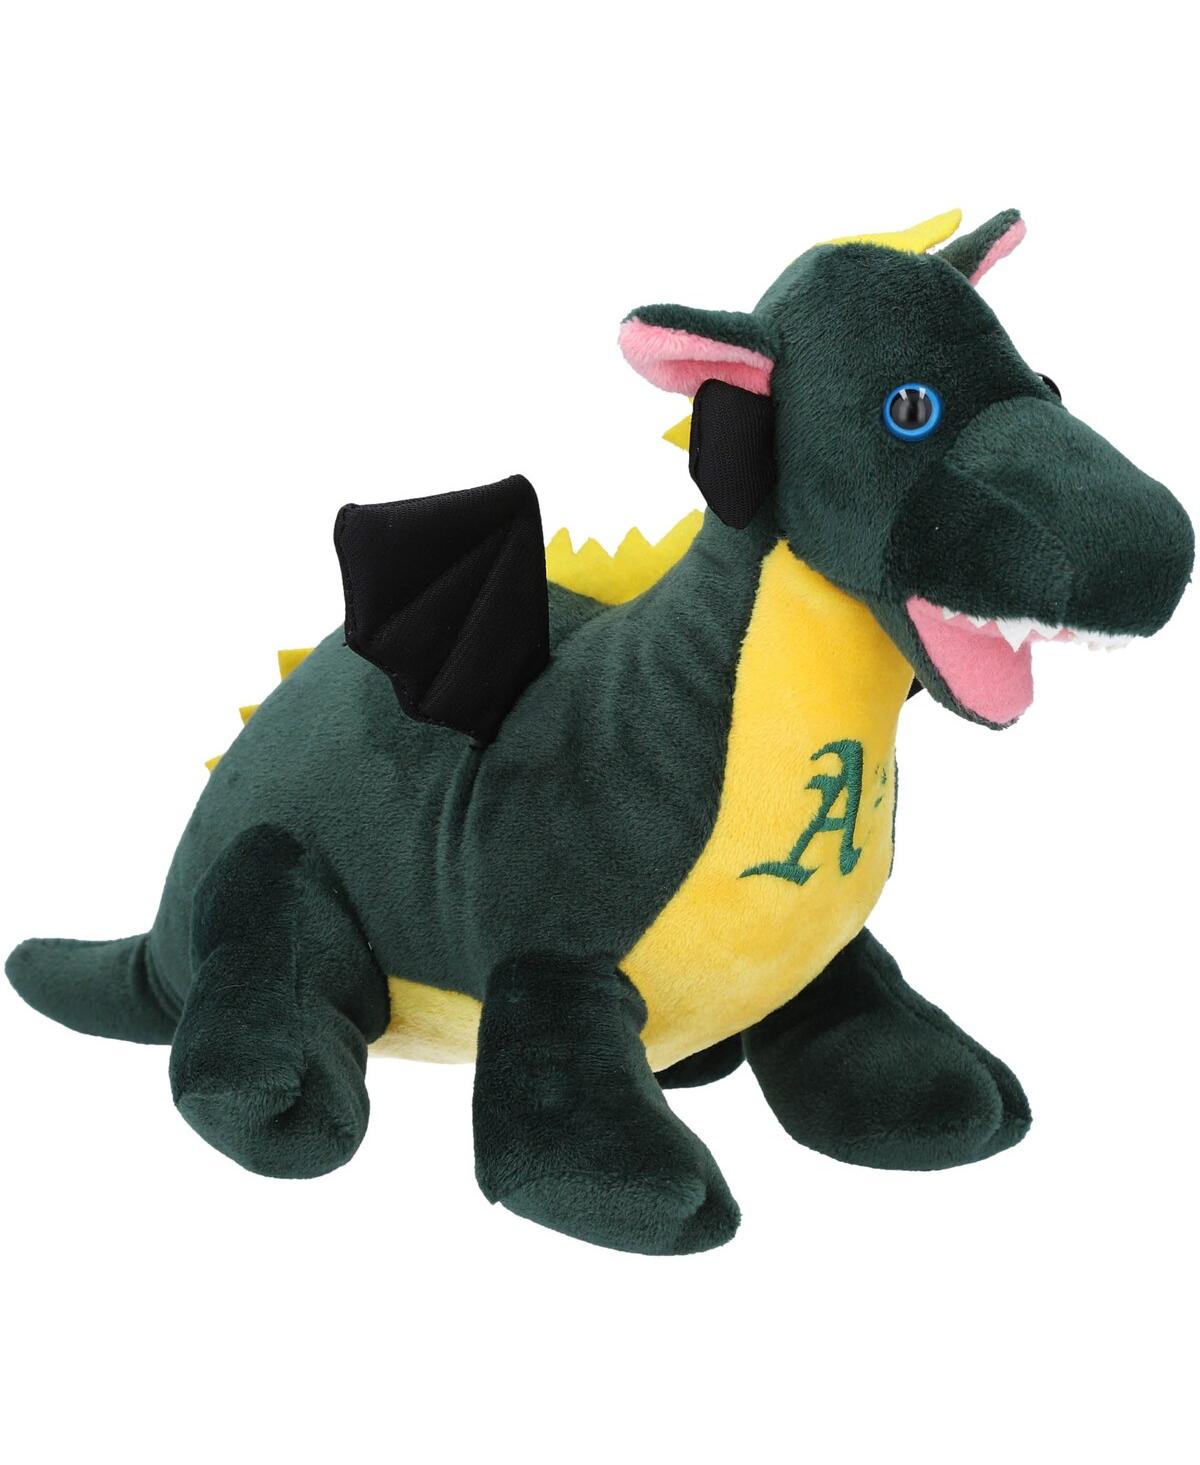 Foco Kids' Oakland Athletics Plush Dragon In Multi